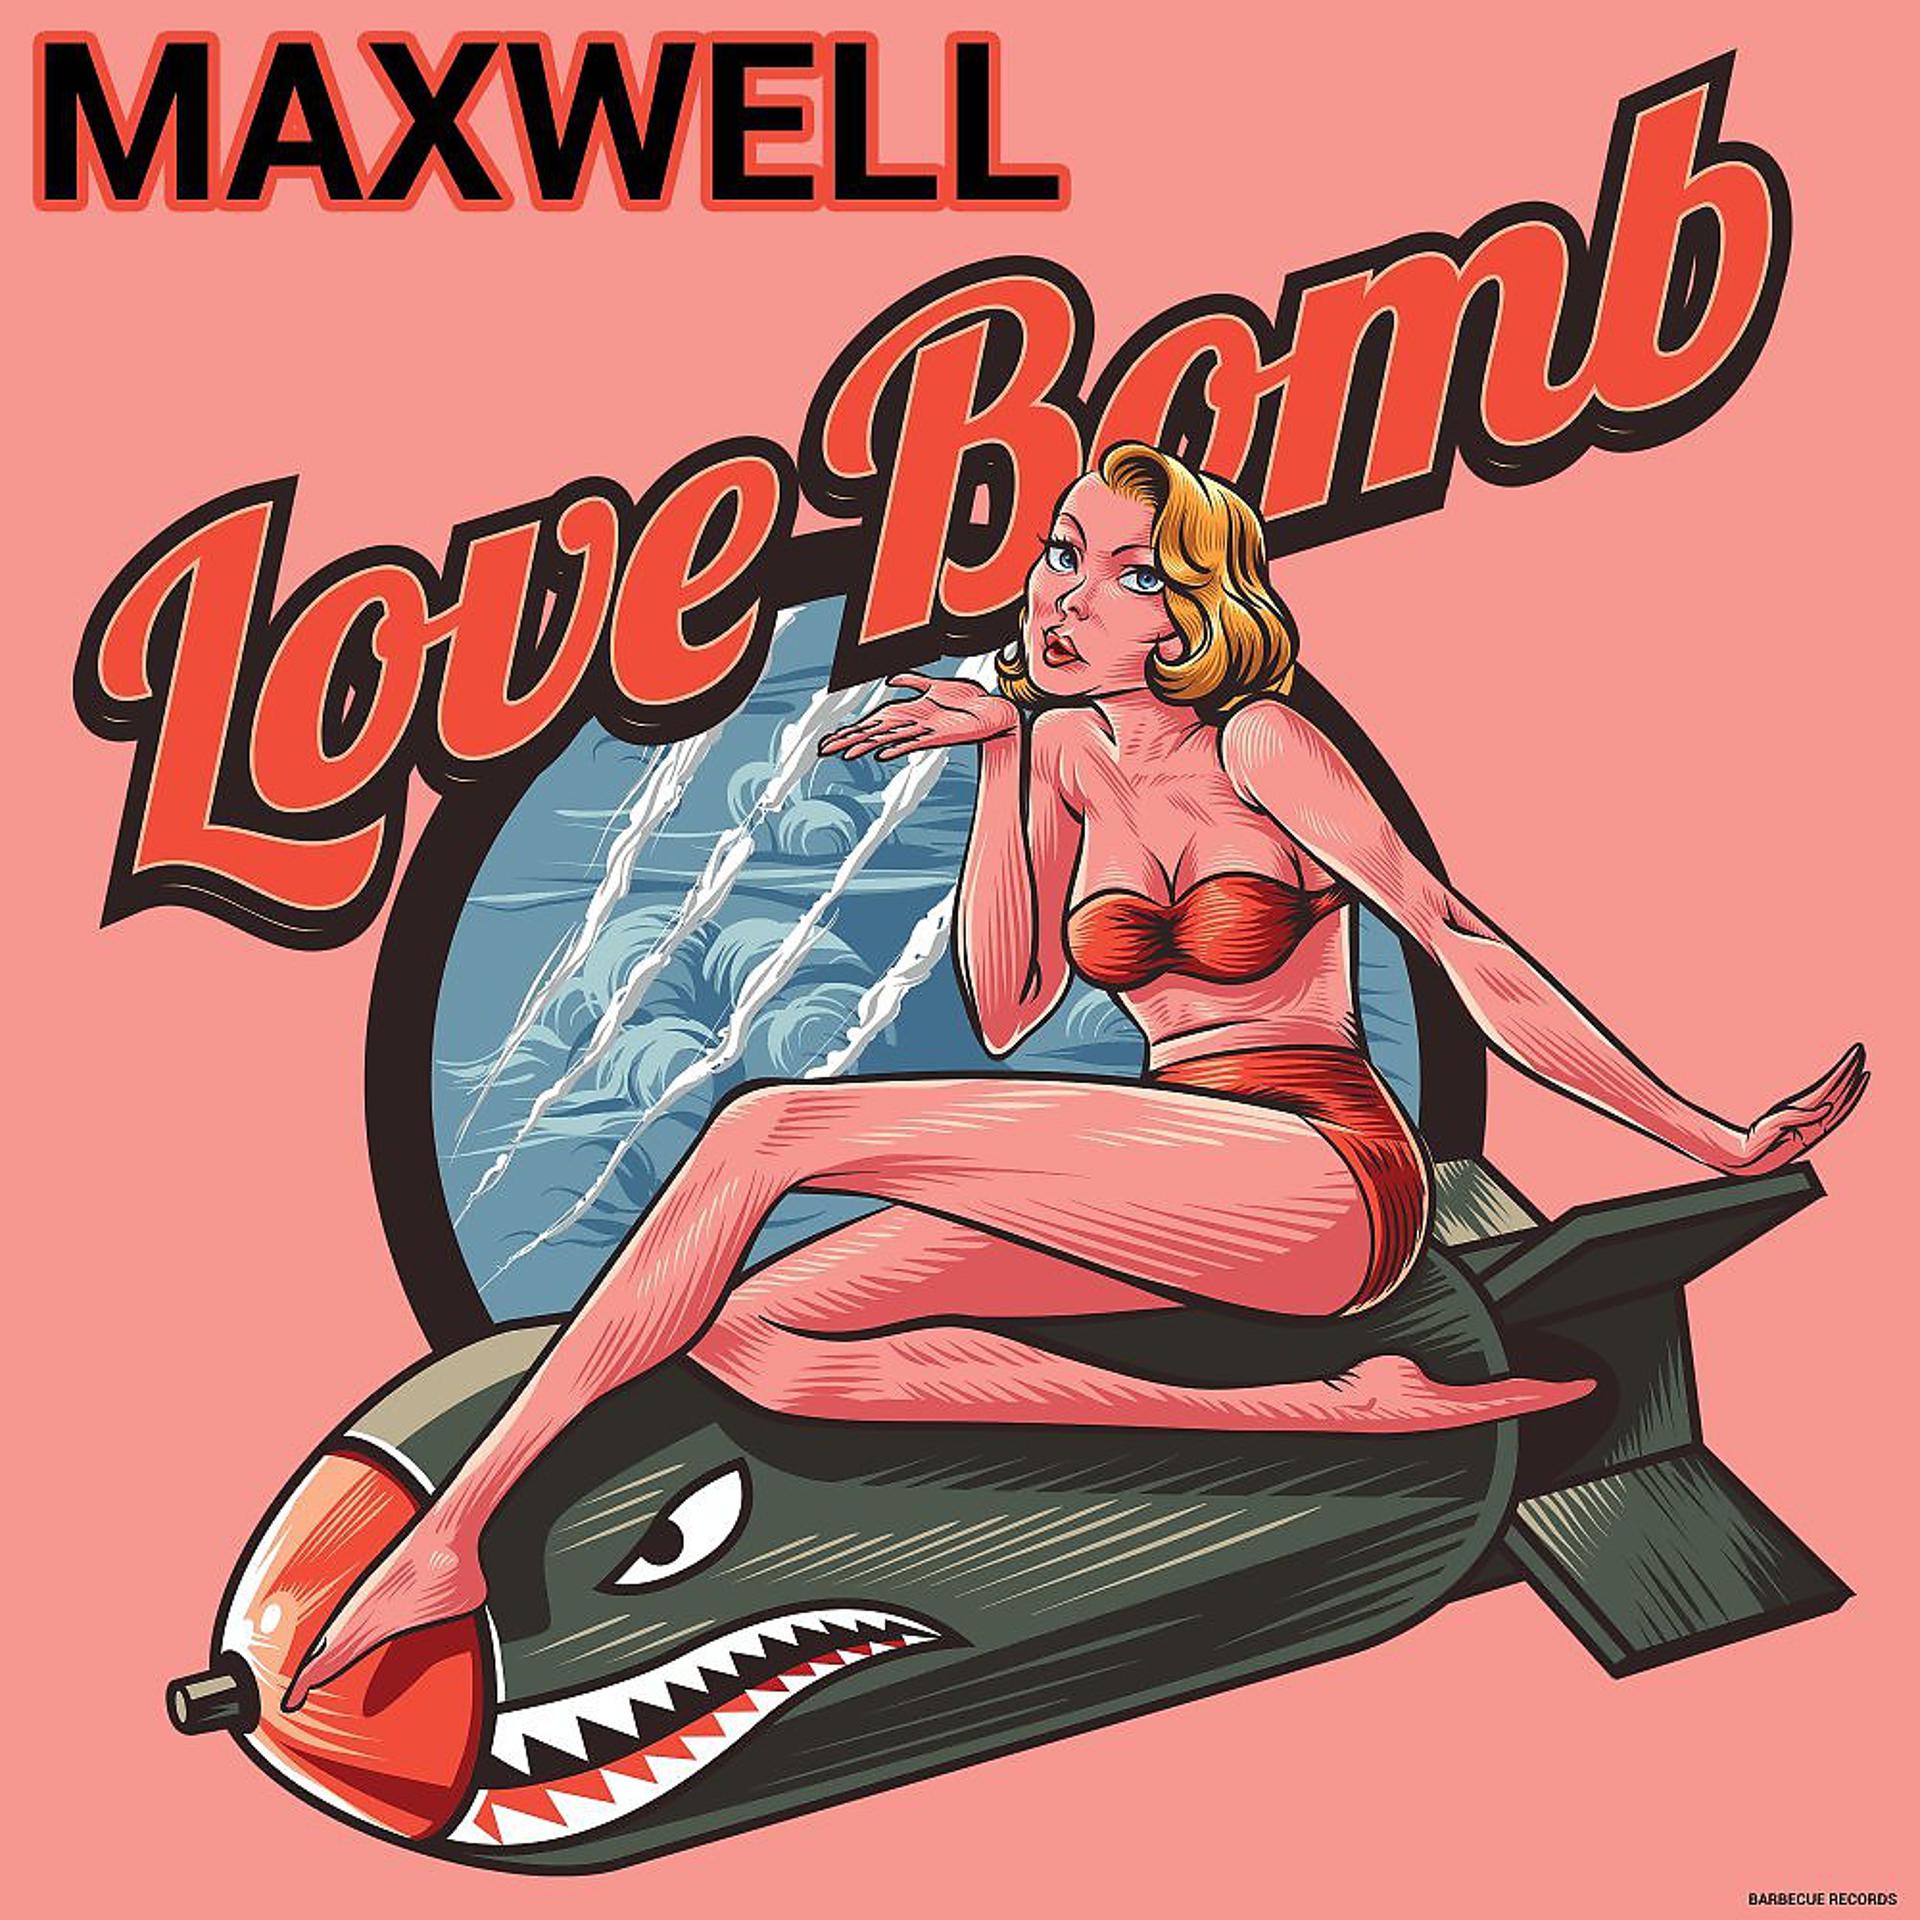 Постер альбома Love Bomb